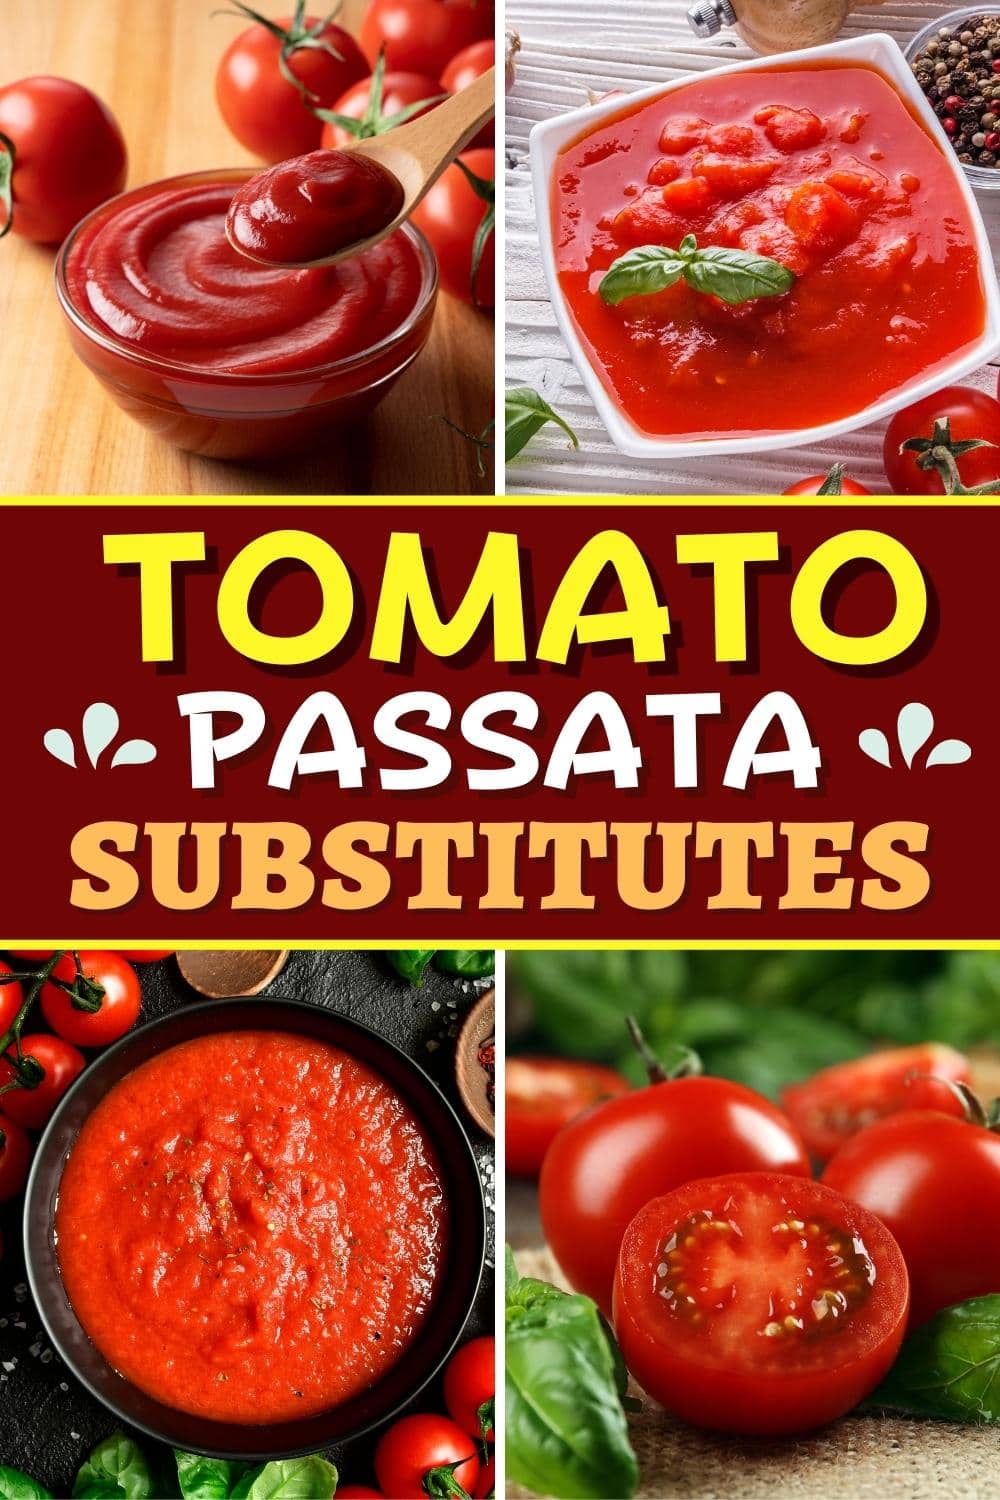 Sustitutos de tomate passata